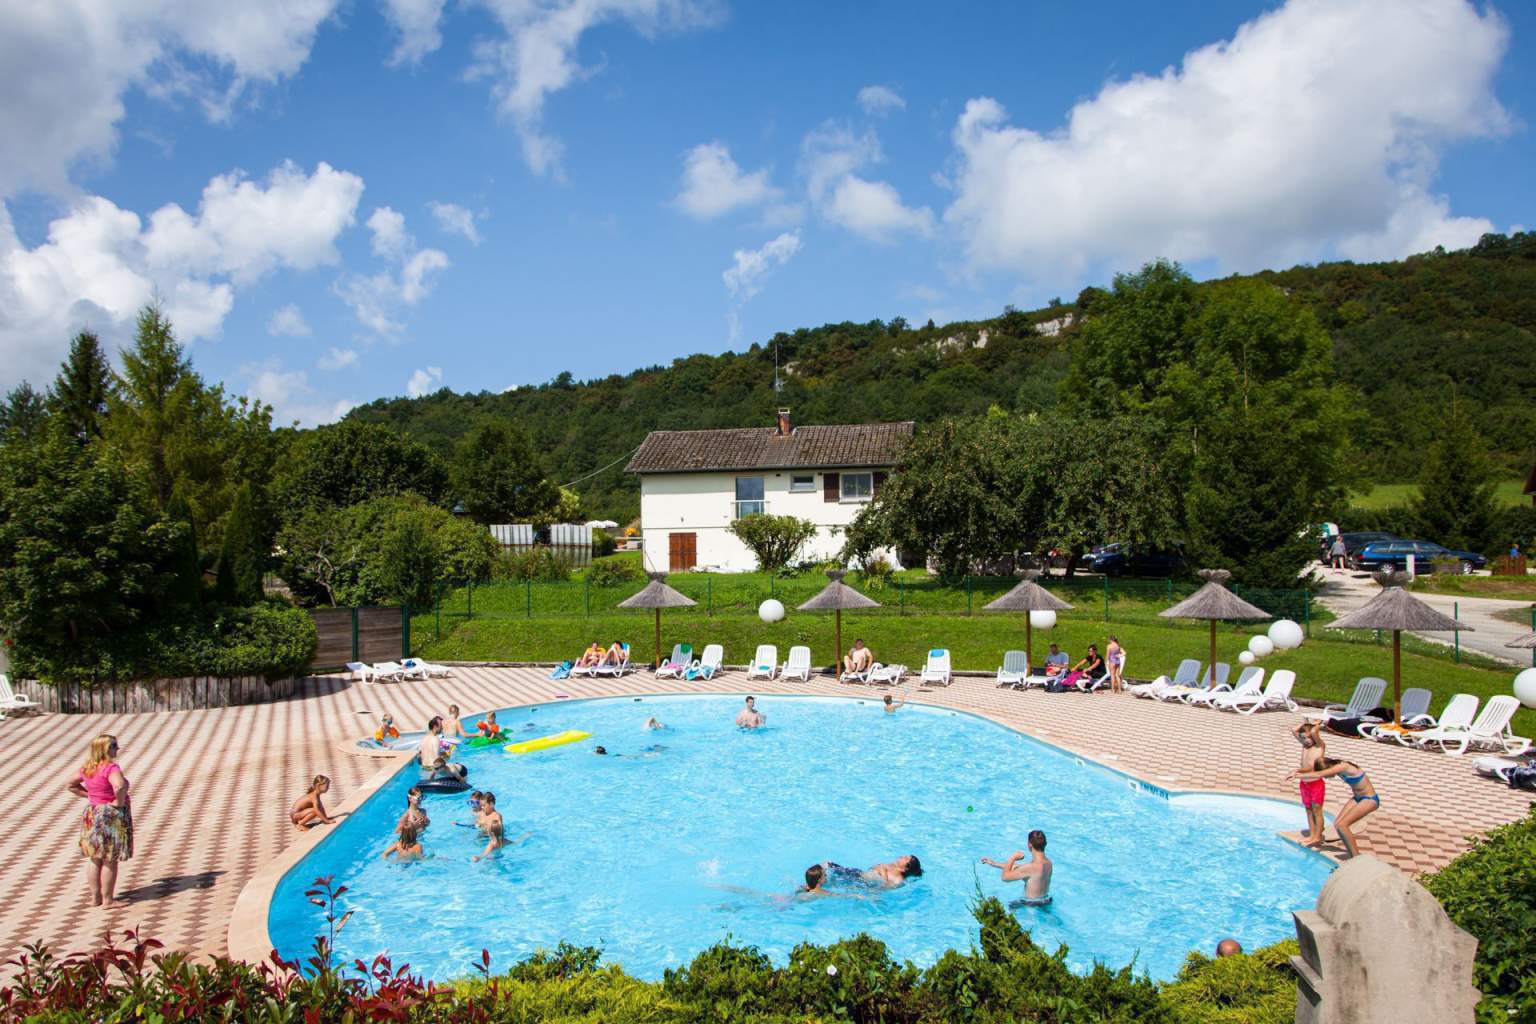 Domaine de l'Épinette - Camping avec Piscine & Toboggans (espace aquatique ouvert à partir du 16 juin), Jura